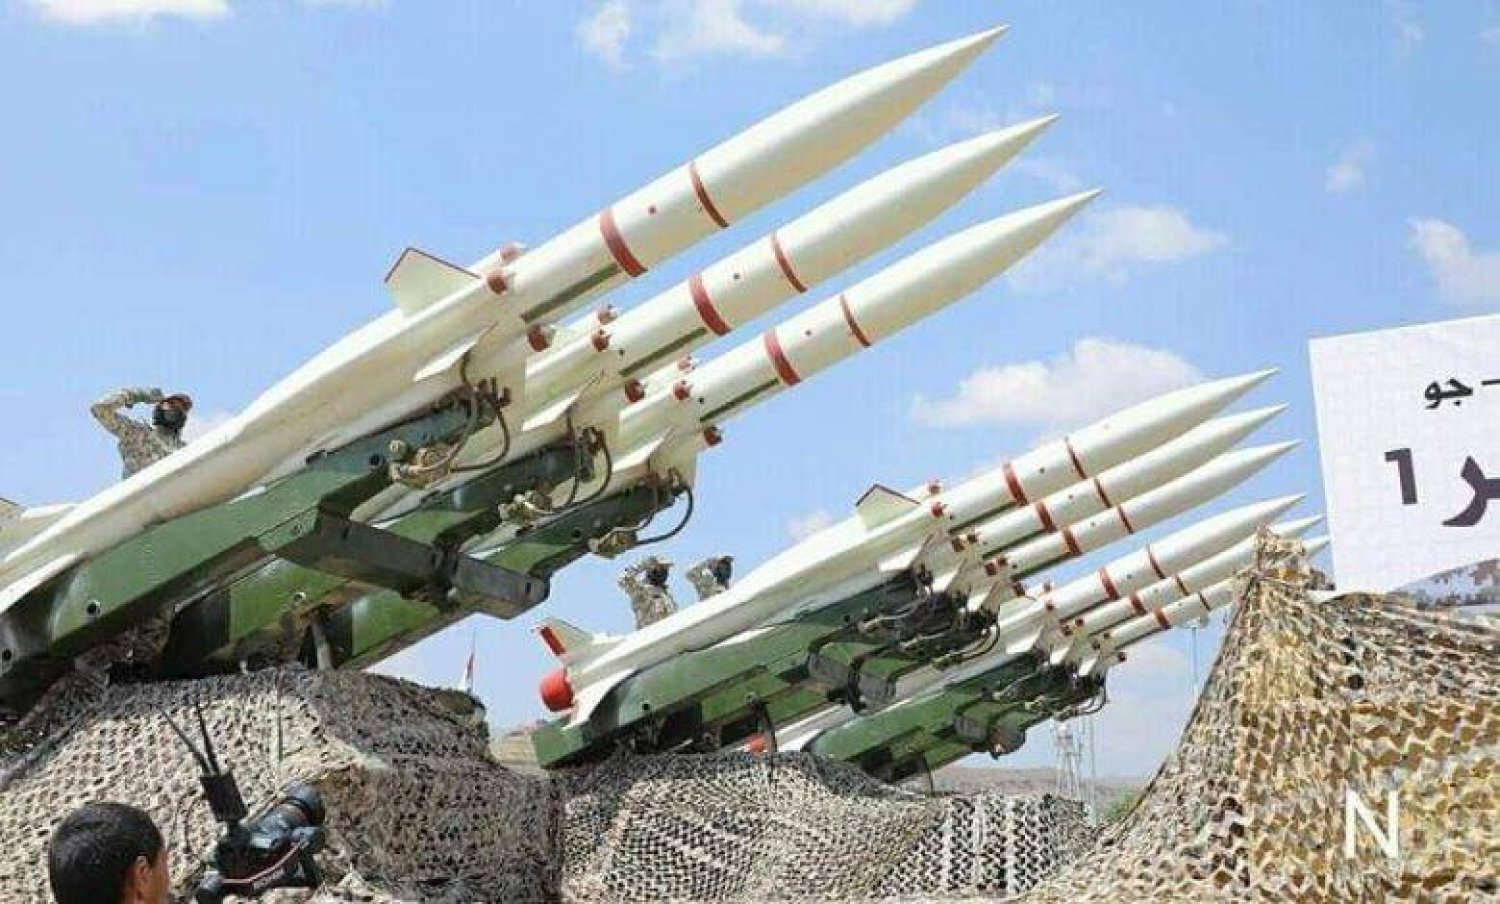 صواريخ حوثية تقول الحكومة اليمنية إنها إيرانية المنشأ (إعلام حوثي)